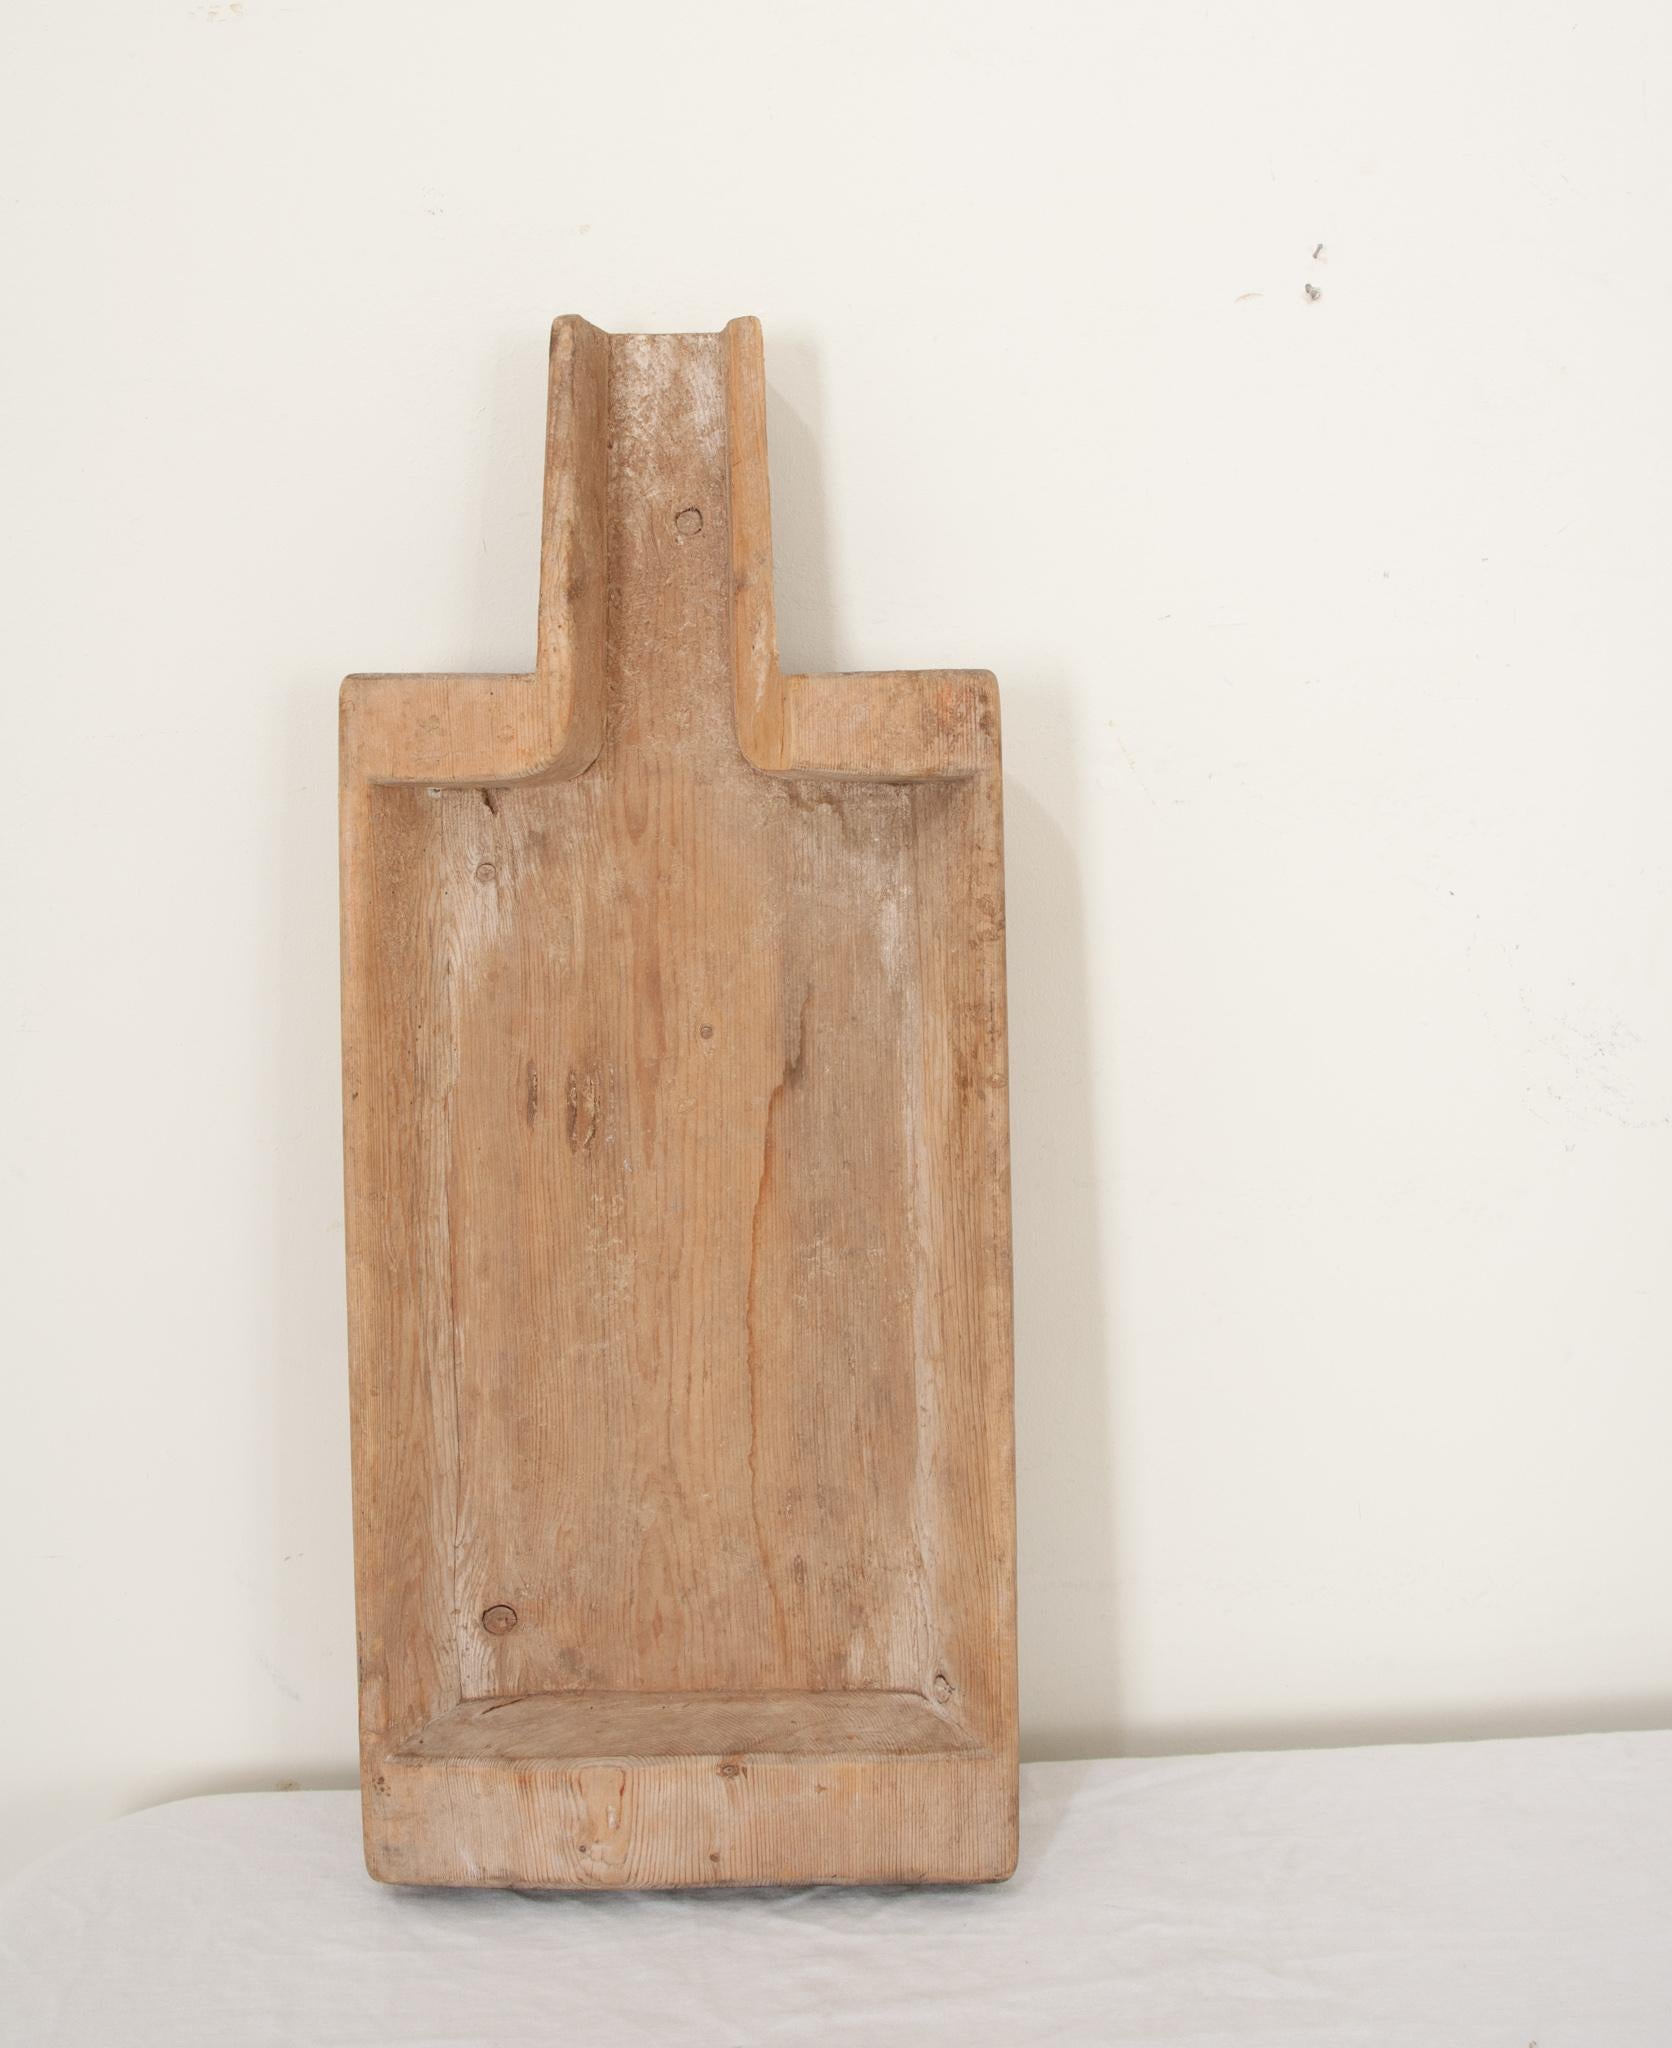 Planche de fromager scandinave du XIXe siècle, fabriquée à la main en bois massif vers 1879. Authentique et rustique, ce modèle rectangulaire évidé,  Une planche en forme de pagaie a été utilisée pour l'égouttage et la séparation du fromage et du